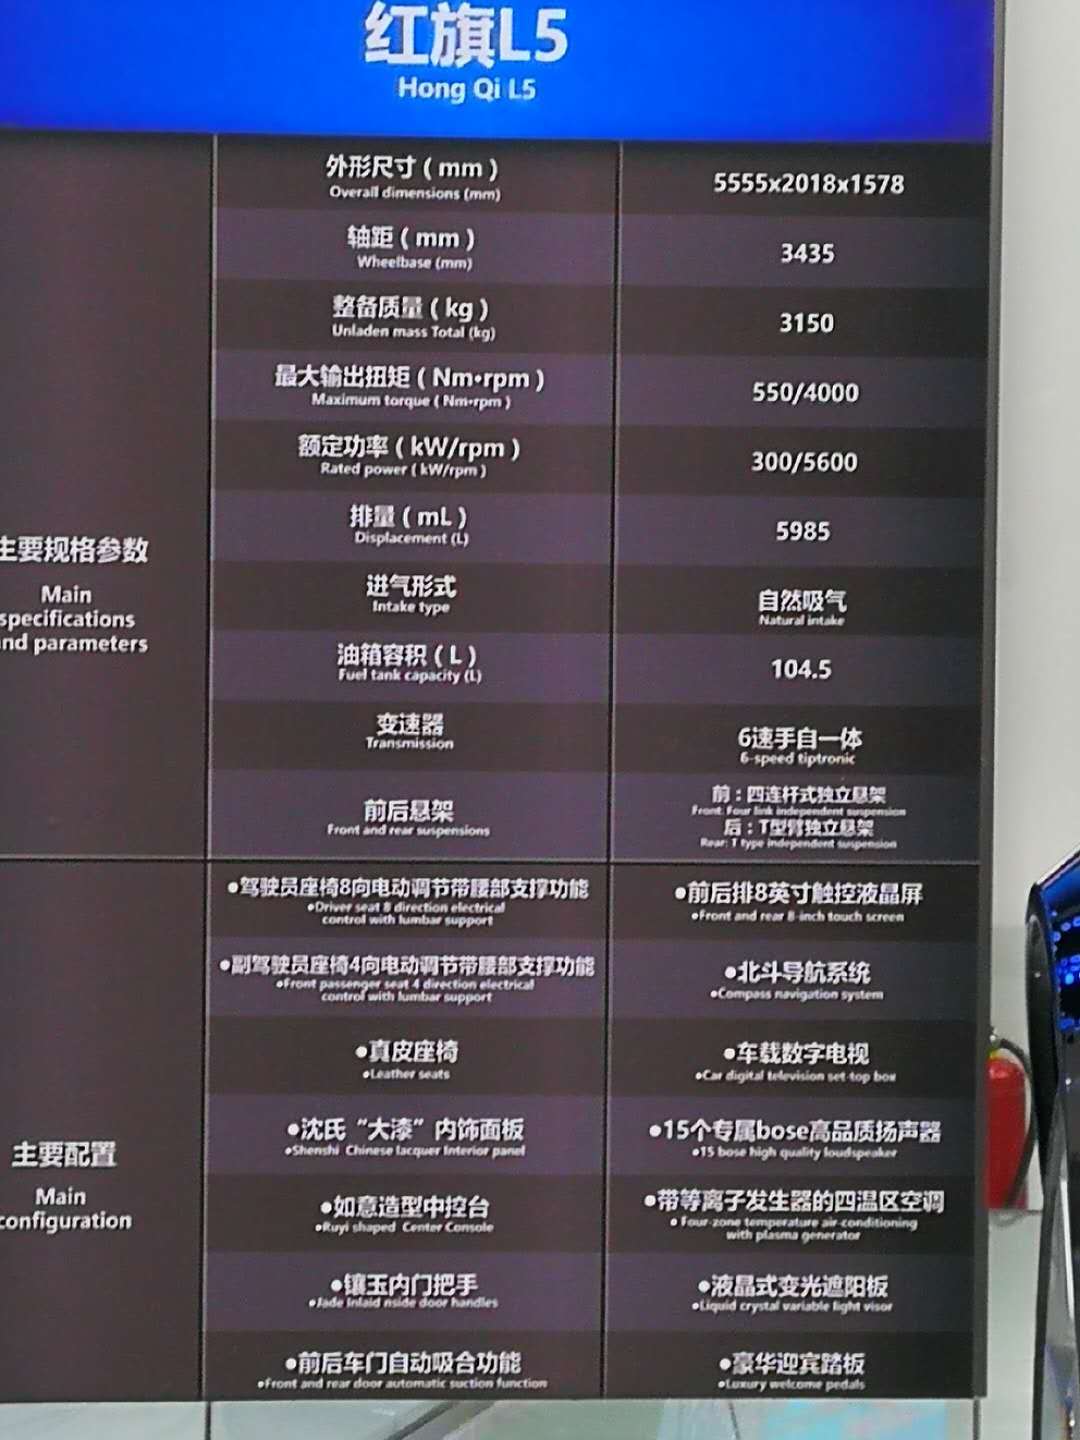 广州车展最耀眼的东方豪车 500万的红旗L5 有钱也不一定买得到